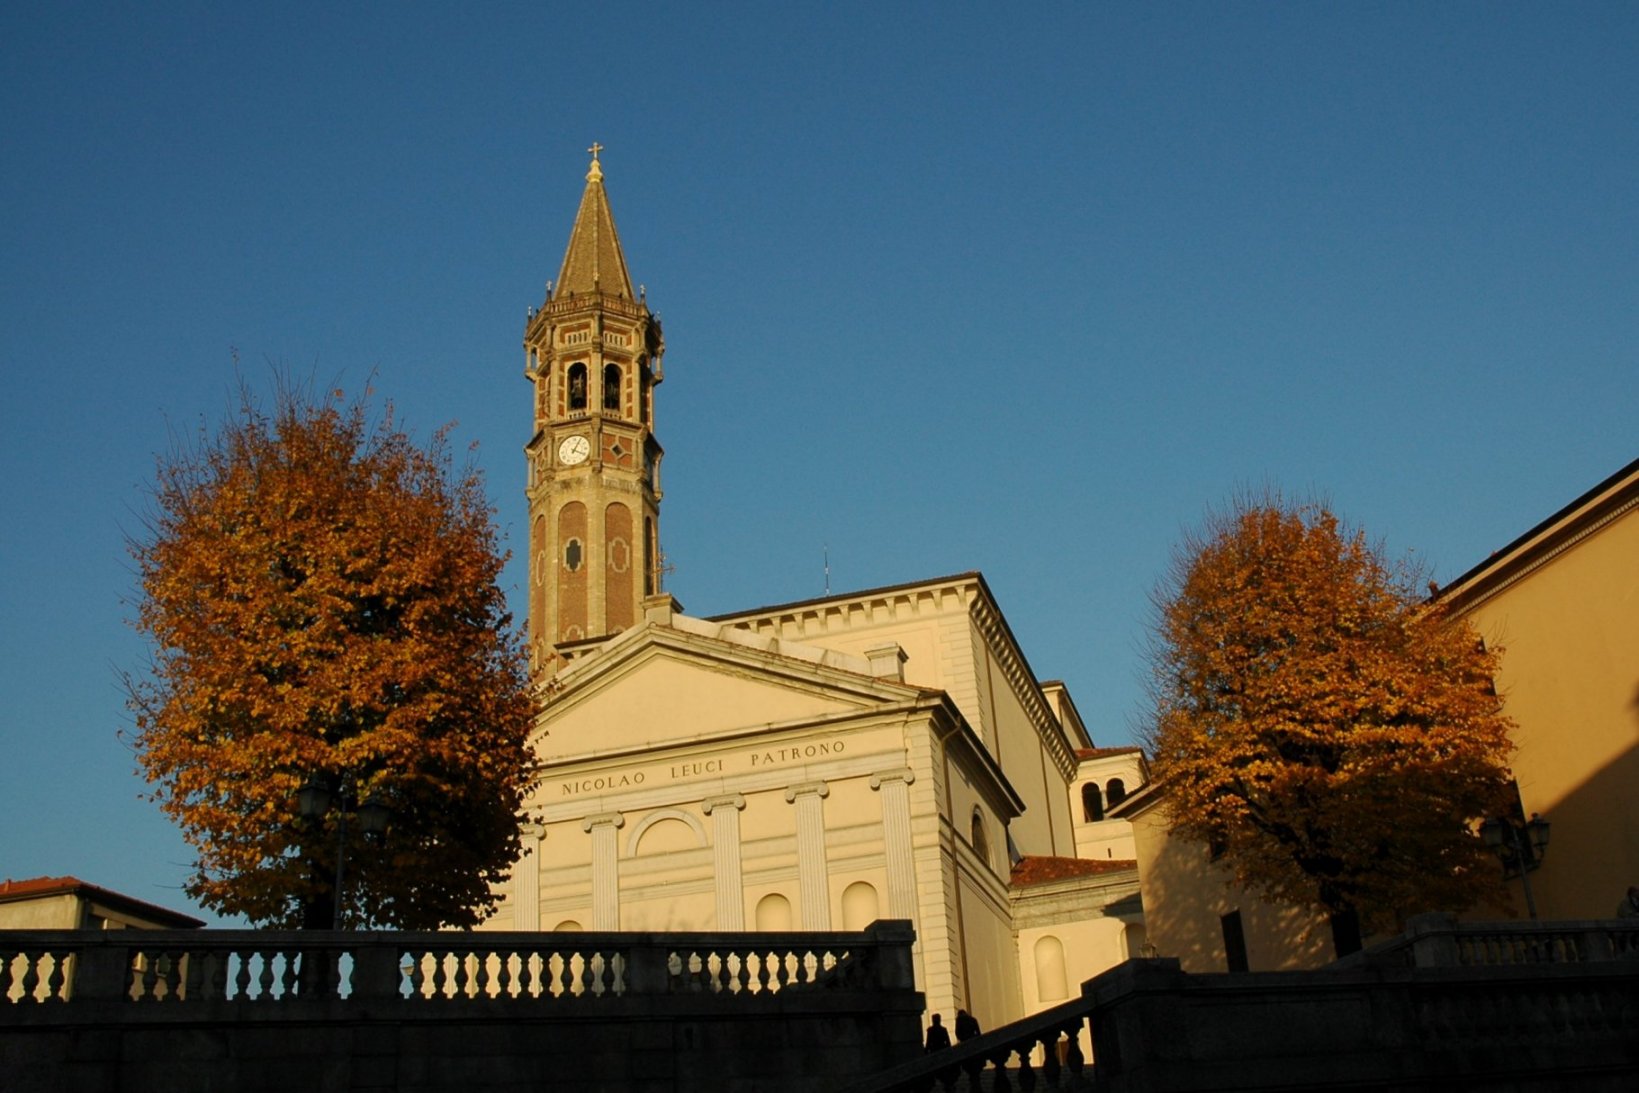 Campanile di San Nicolò in Lecco